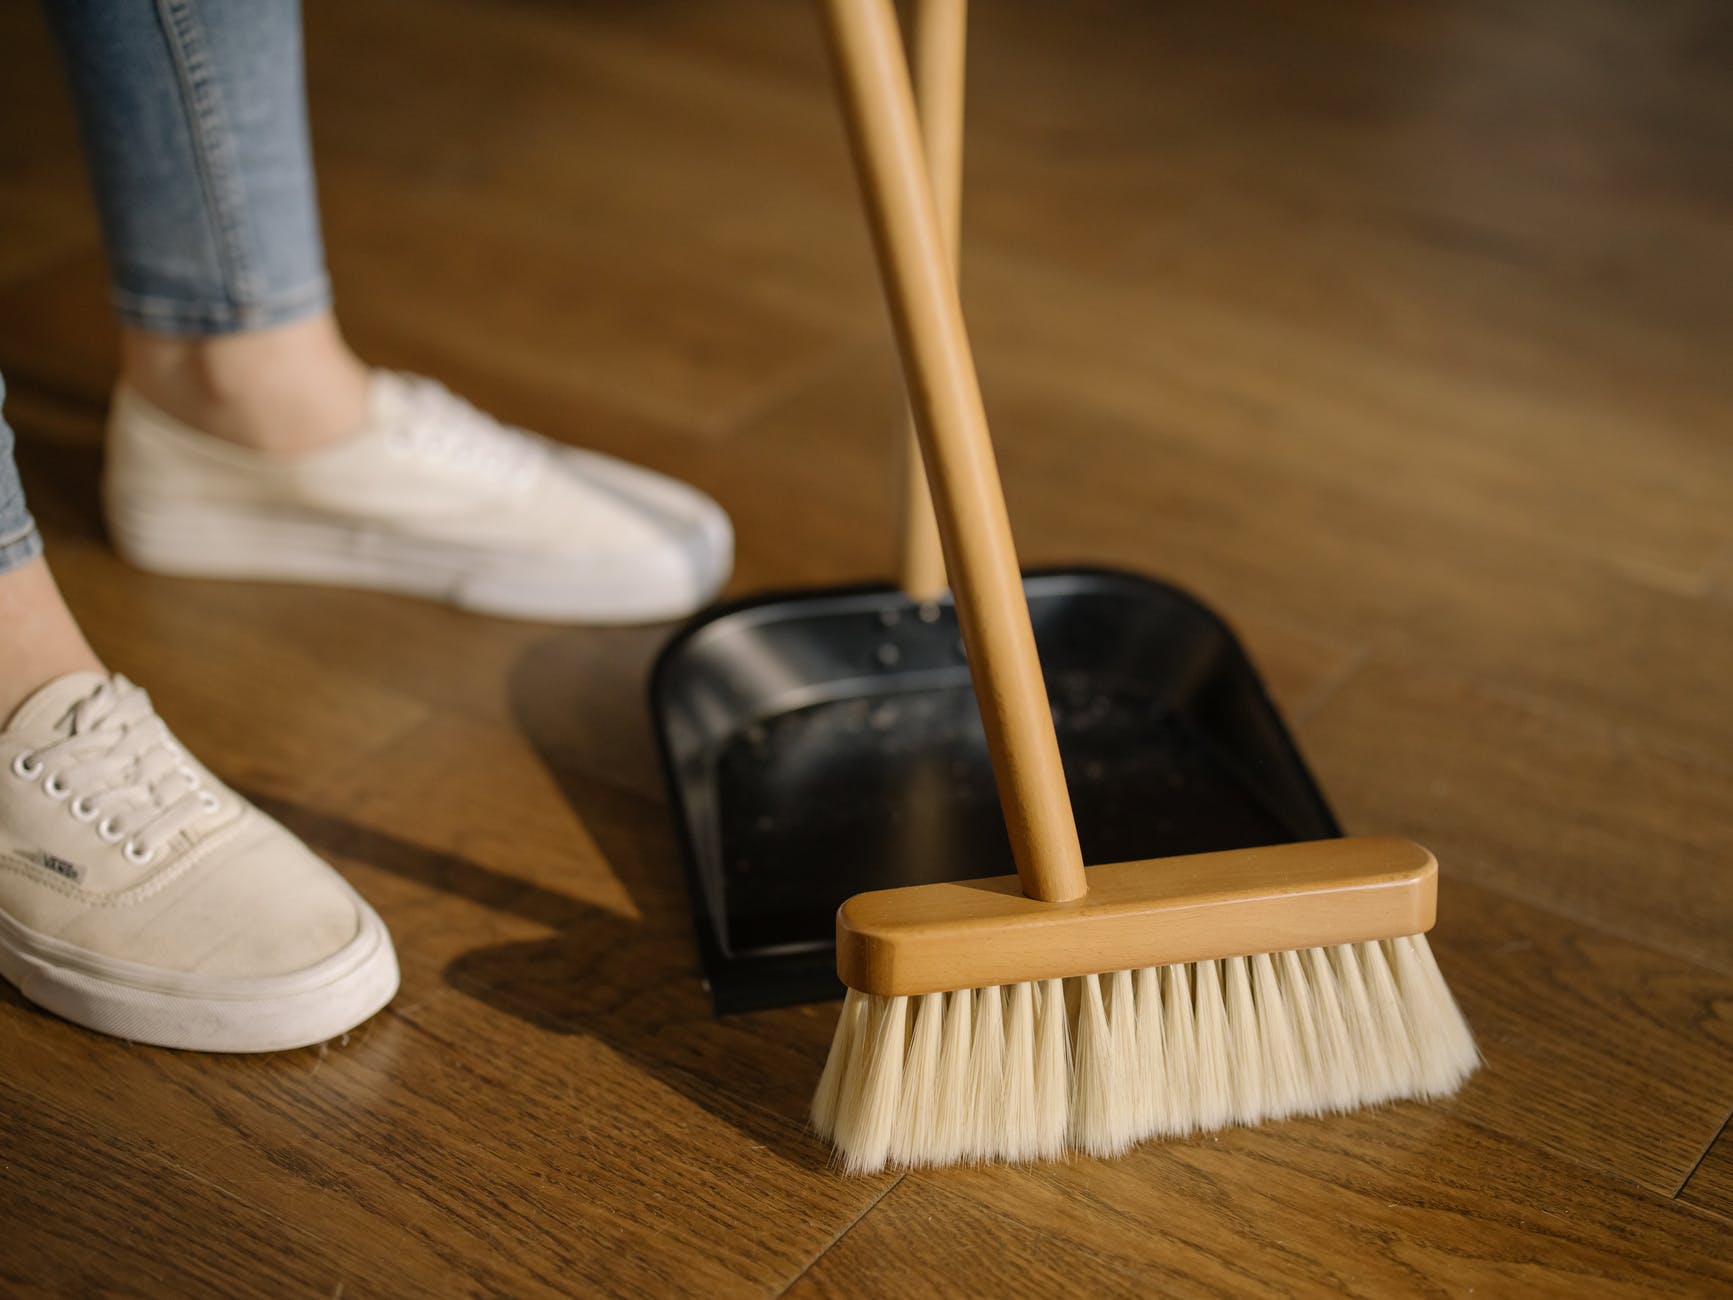 Os acessórios para limpar a casa devem ser sempre higienizados após o uso (Foto: cottonbro)